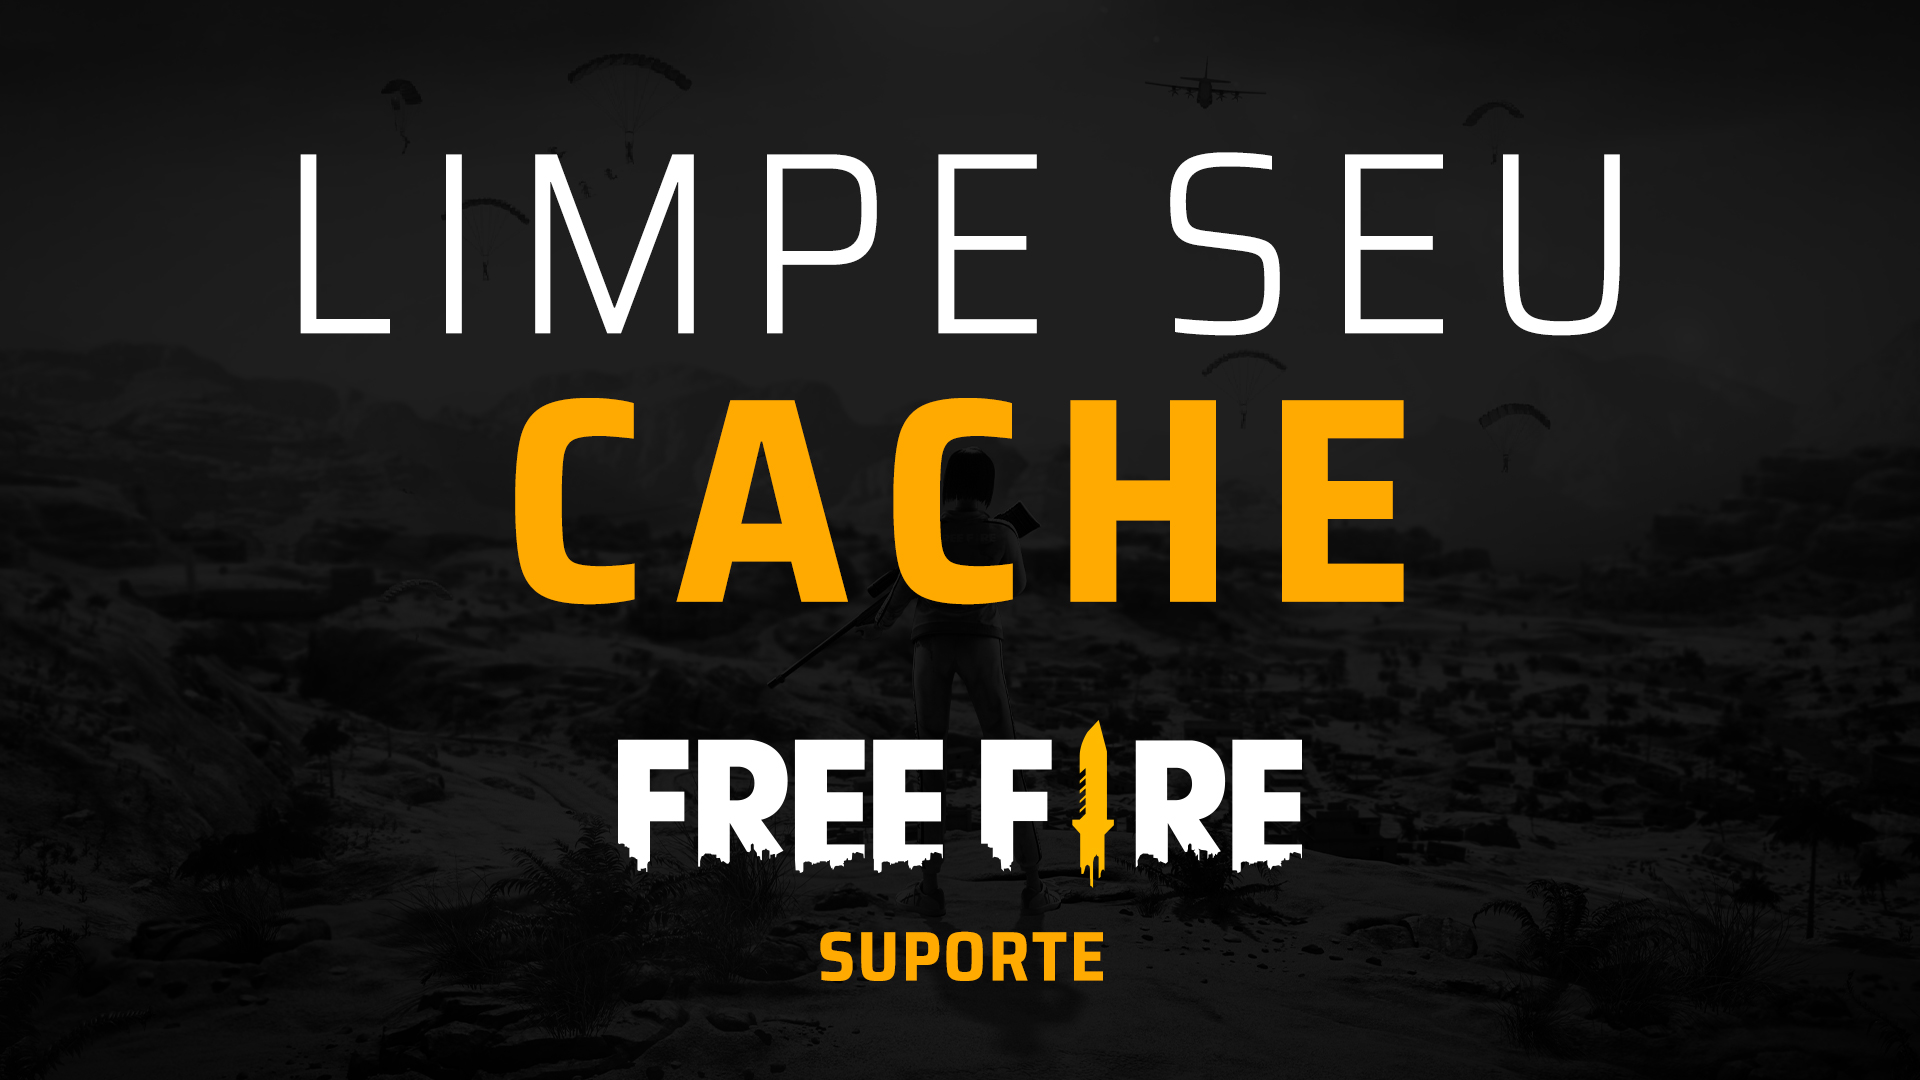 Equipe de suporte Free Fire de outro servidores – Free Fire Suporte